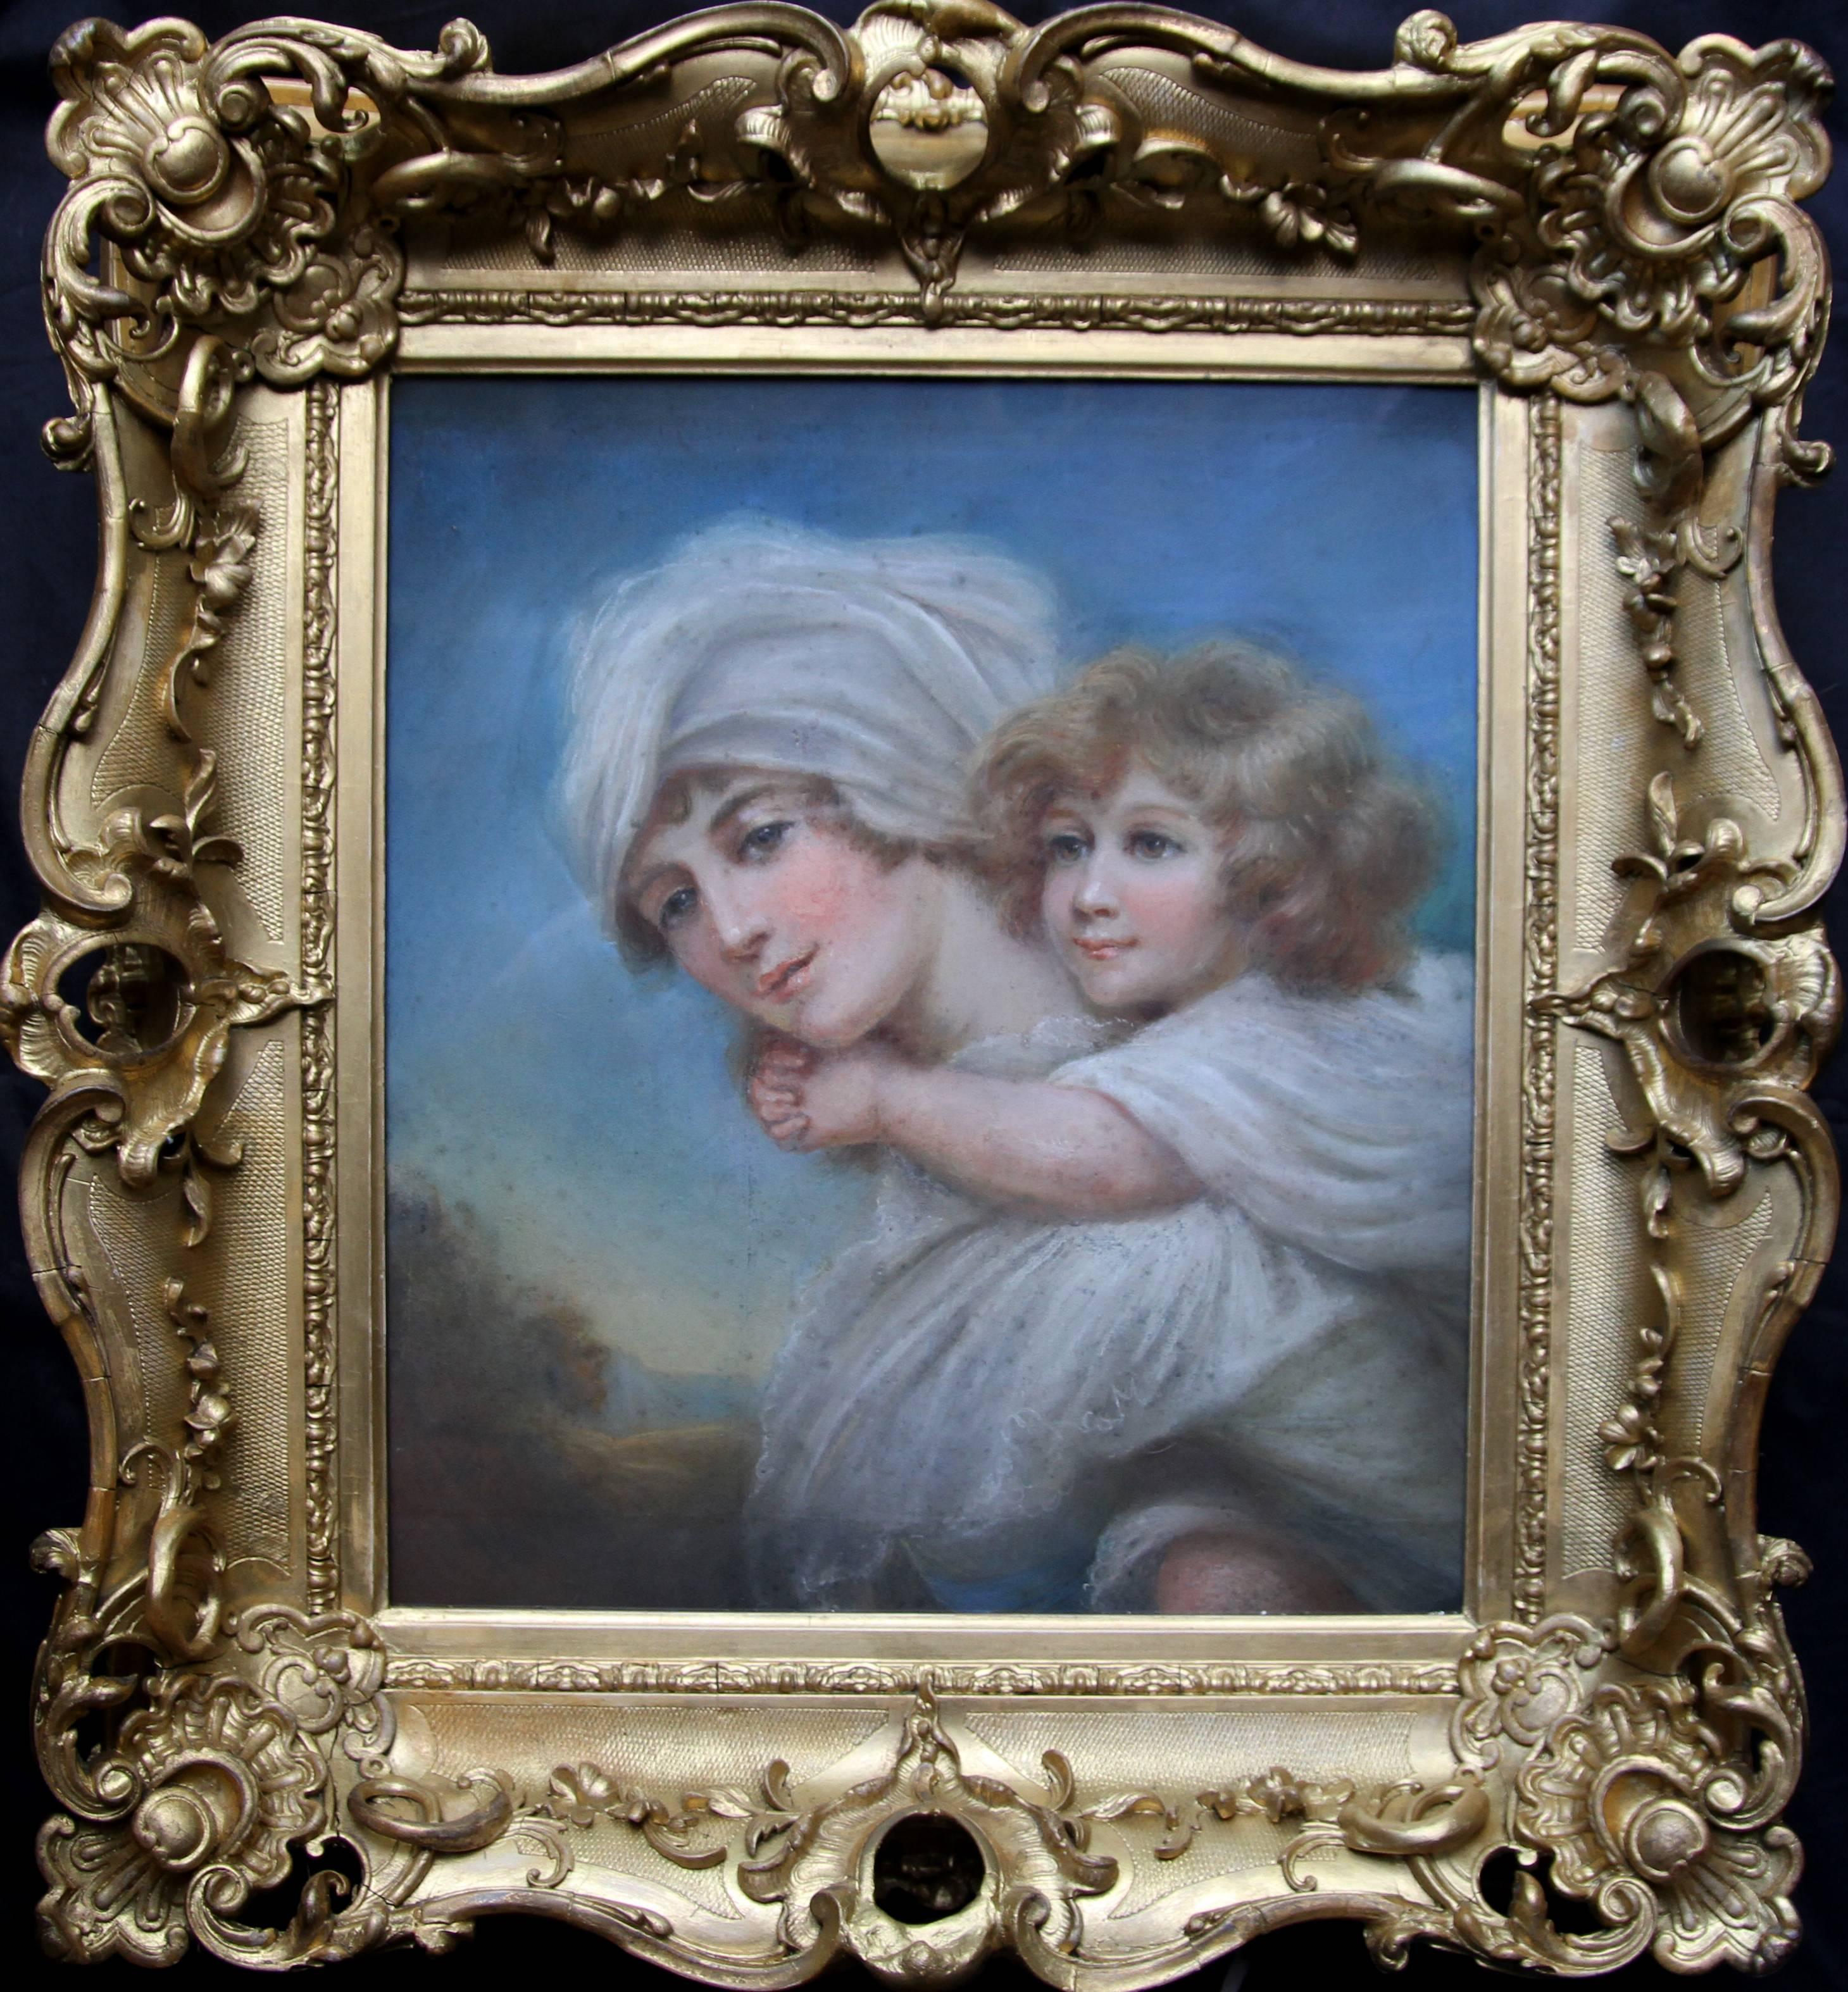 Unknown Portrait Painting – Frau und Kind – Regency-Porträtgemälde eines Alten Meisters, Mutter mit Kind